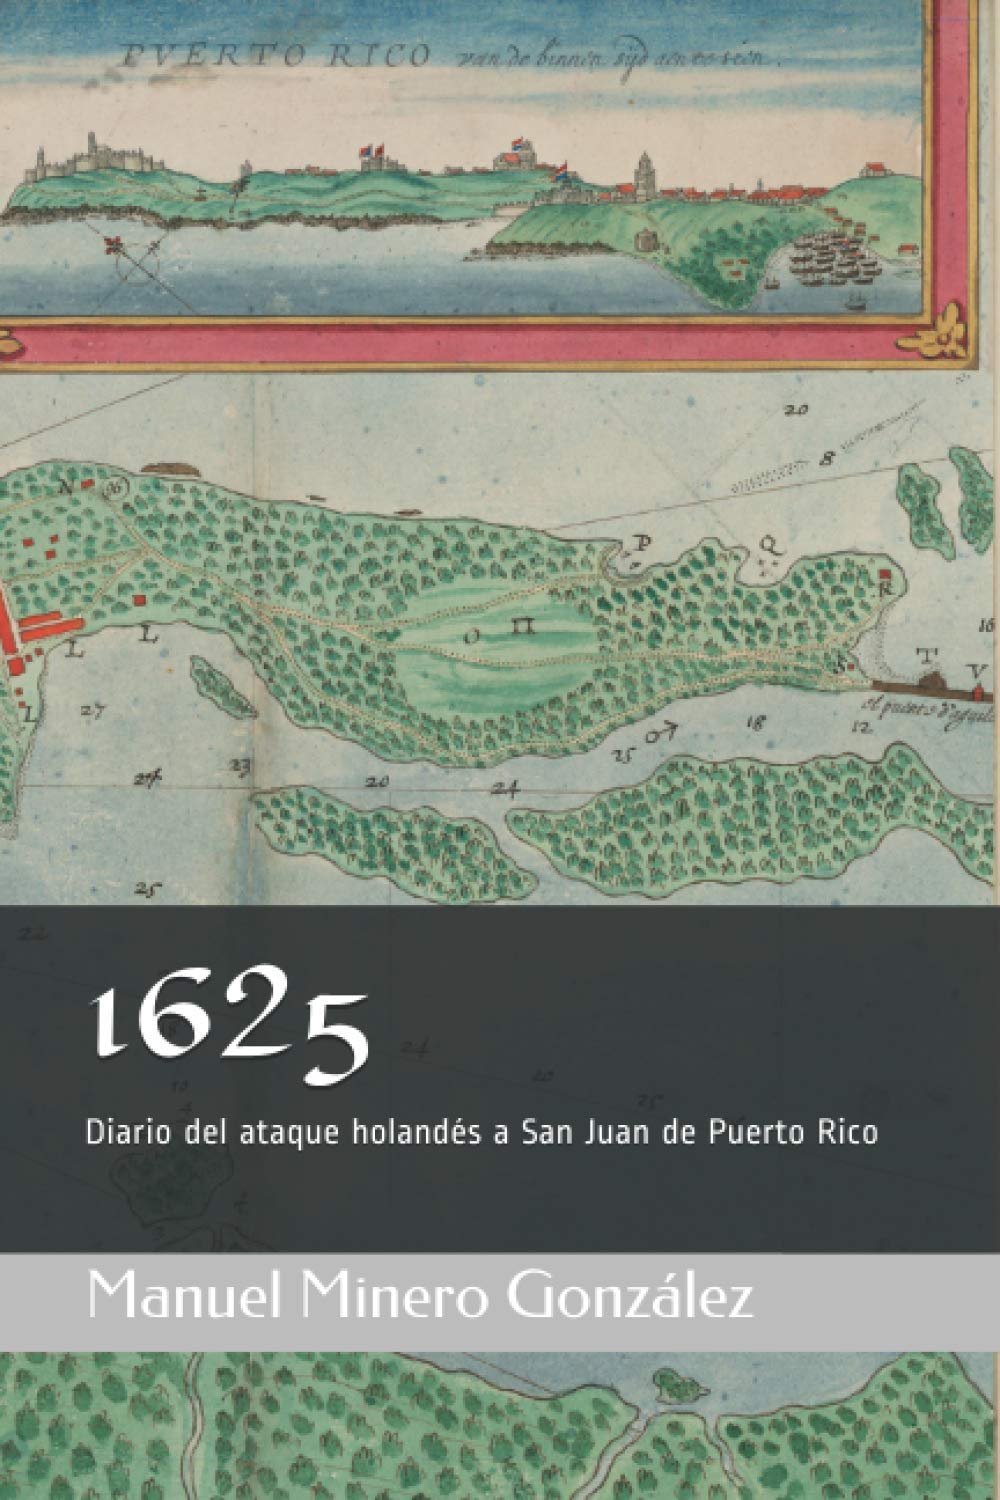 1625 DIARIO DEL ATAQUE HOLANDES A SAN JUAN DE PUERTO RICO - Manuel Minero González